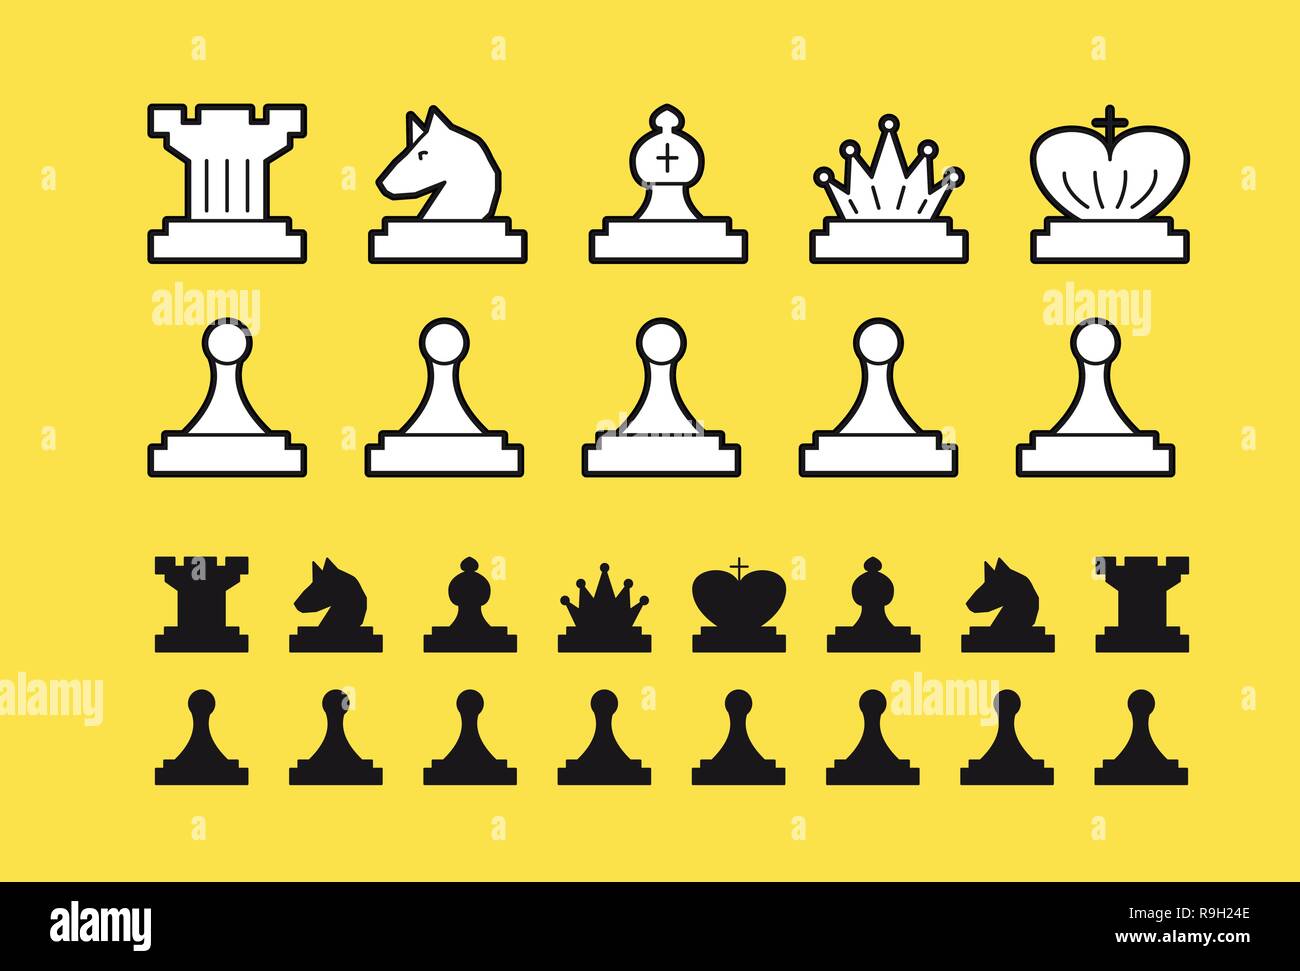 Chess set vector illustration on white background Stock Vector